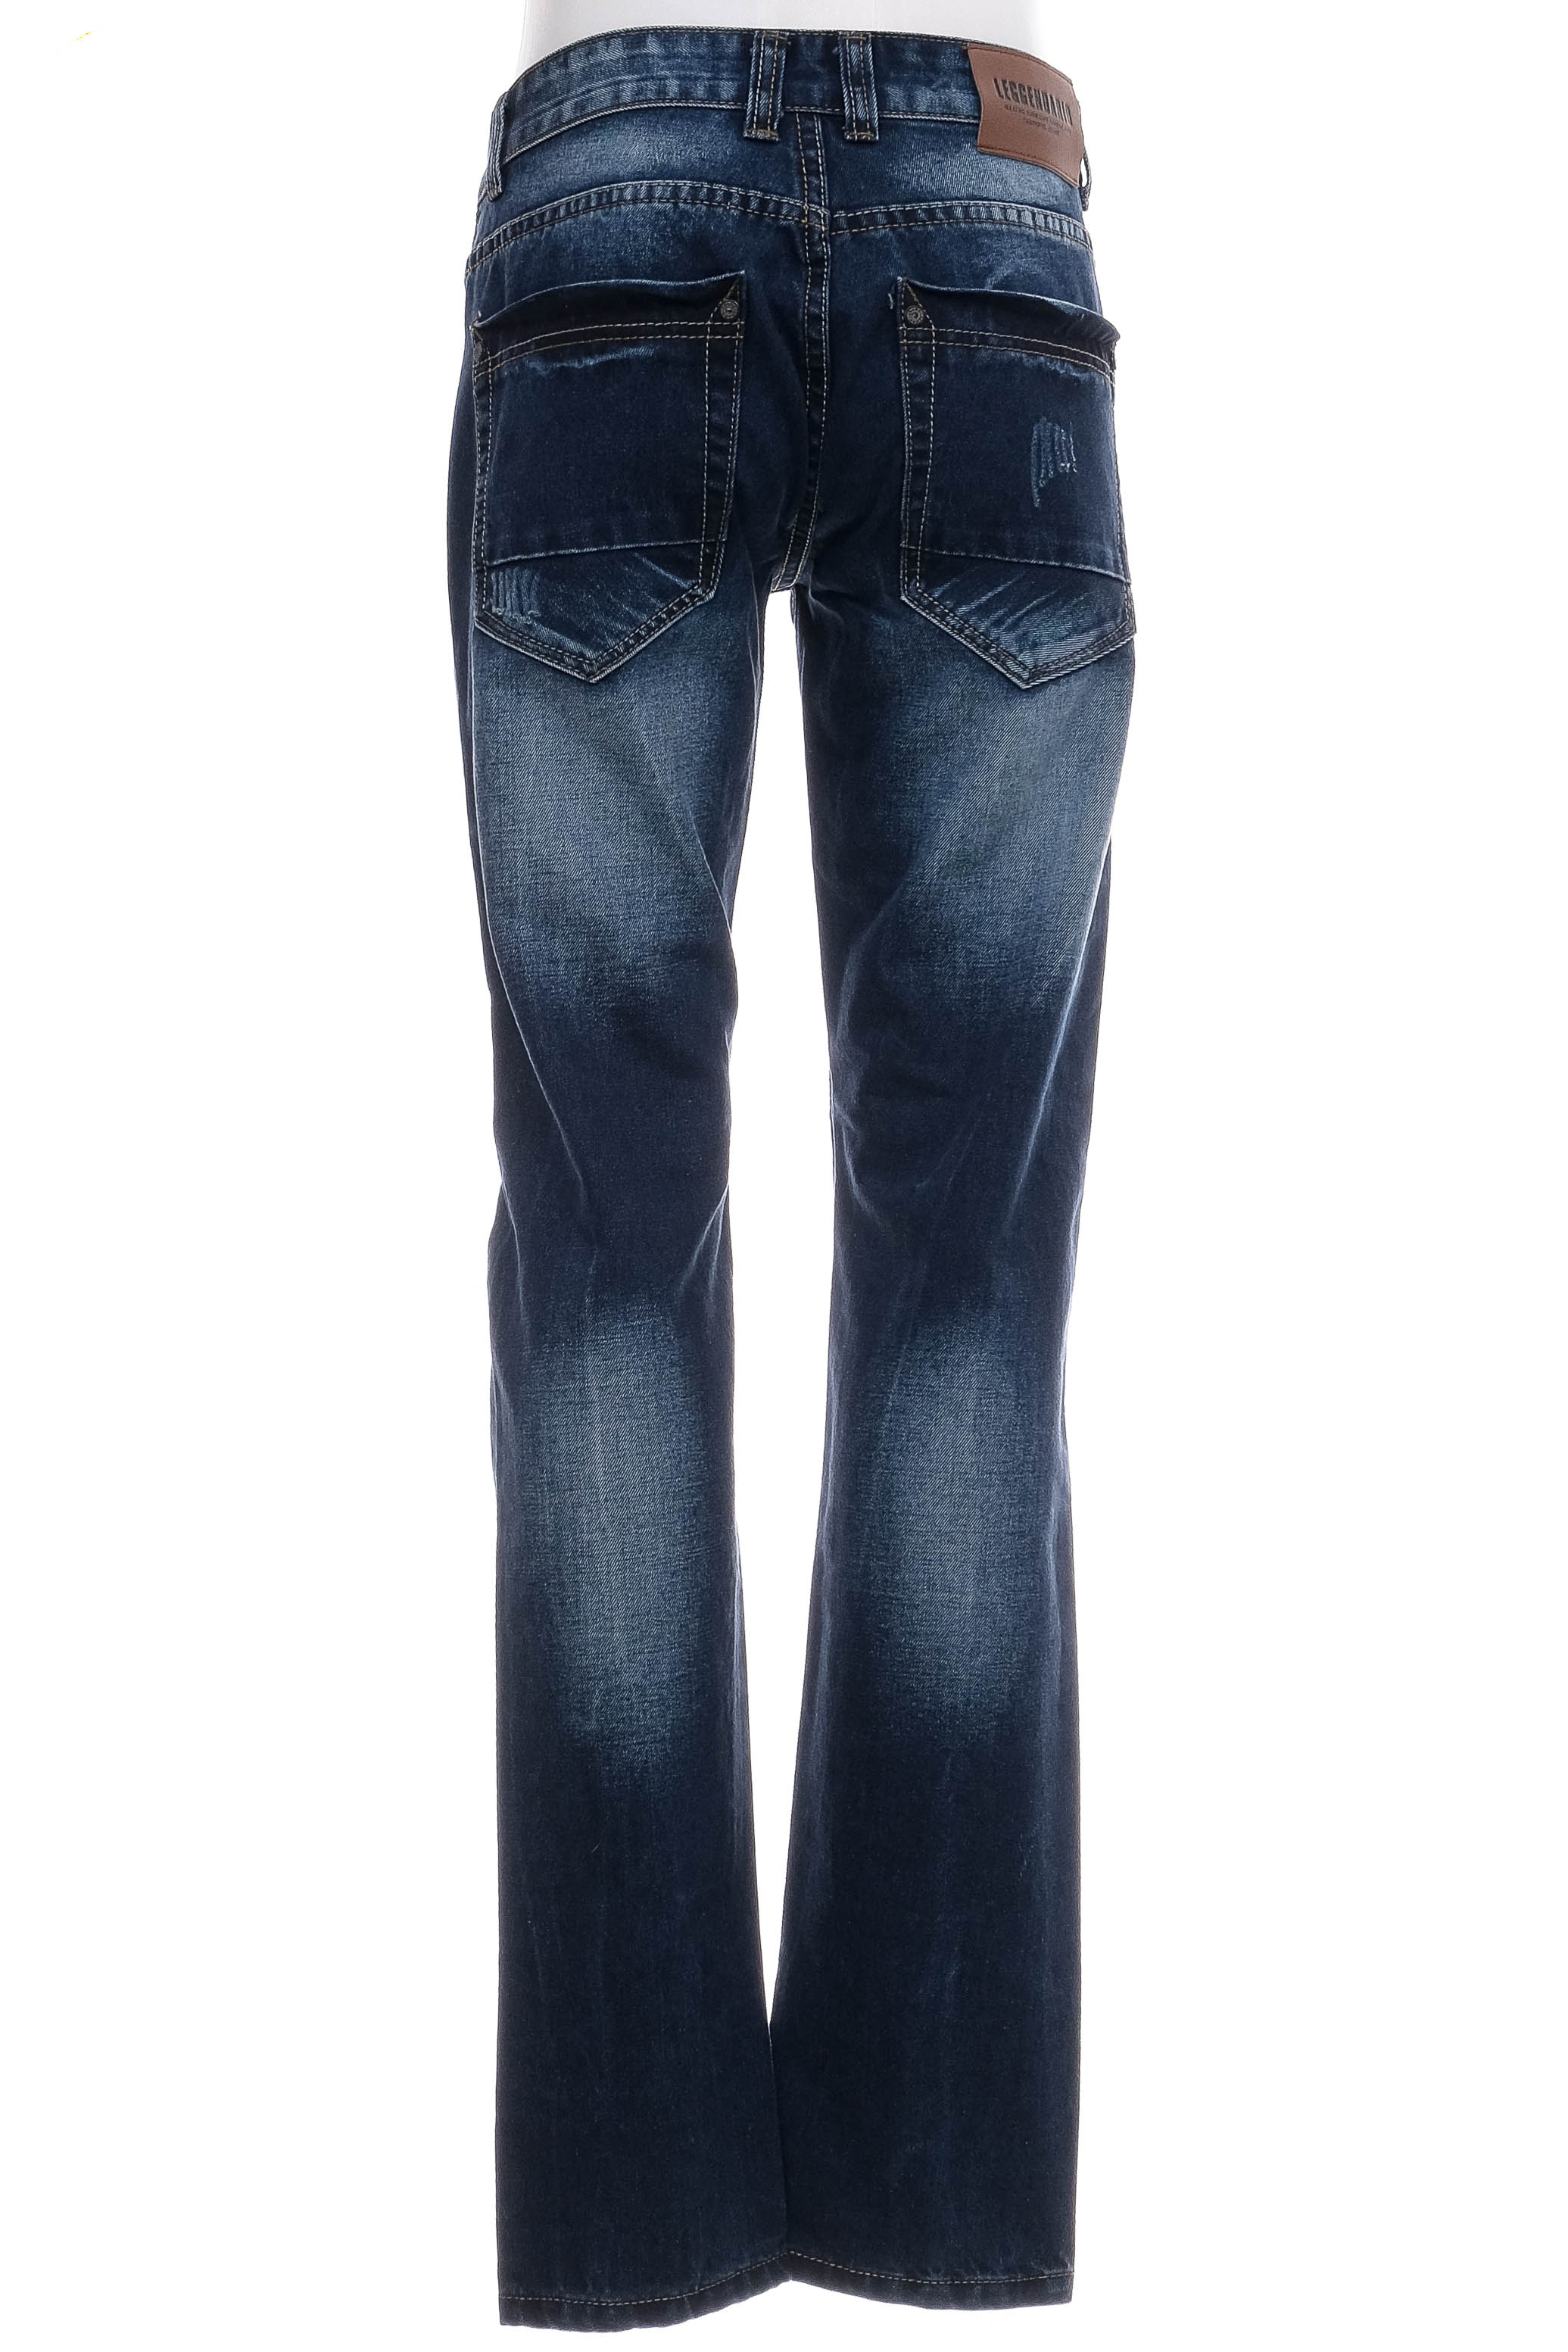 Men's jeans - Leggendario - 1